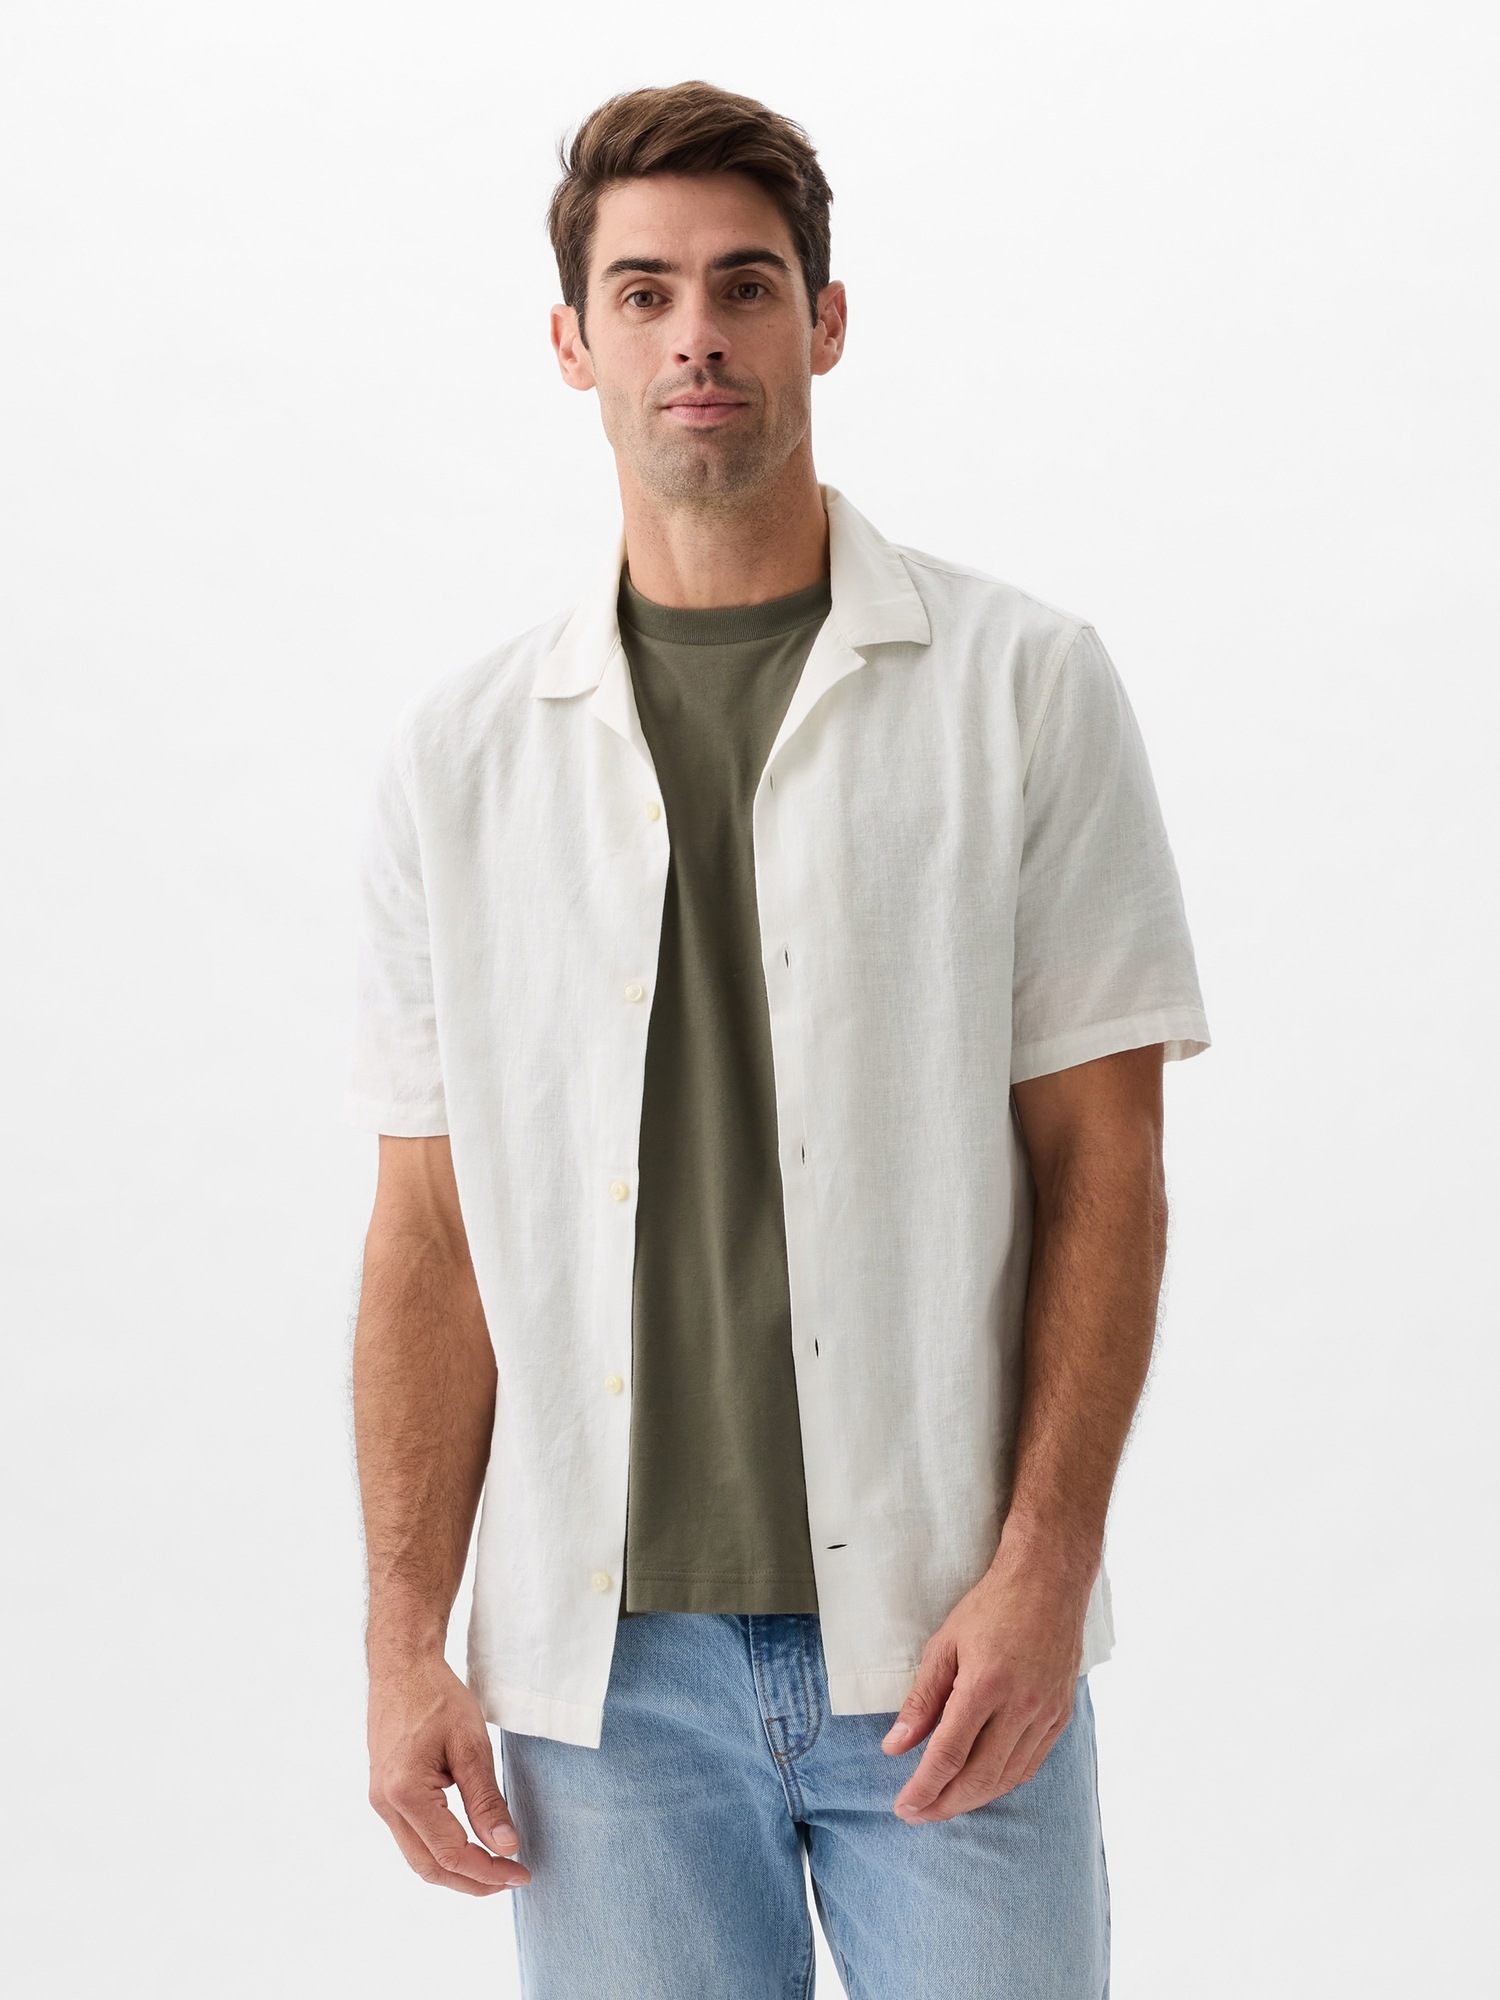 GAP Linen Shirt with Short Sleeves - Men's